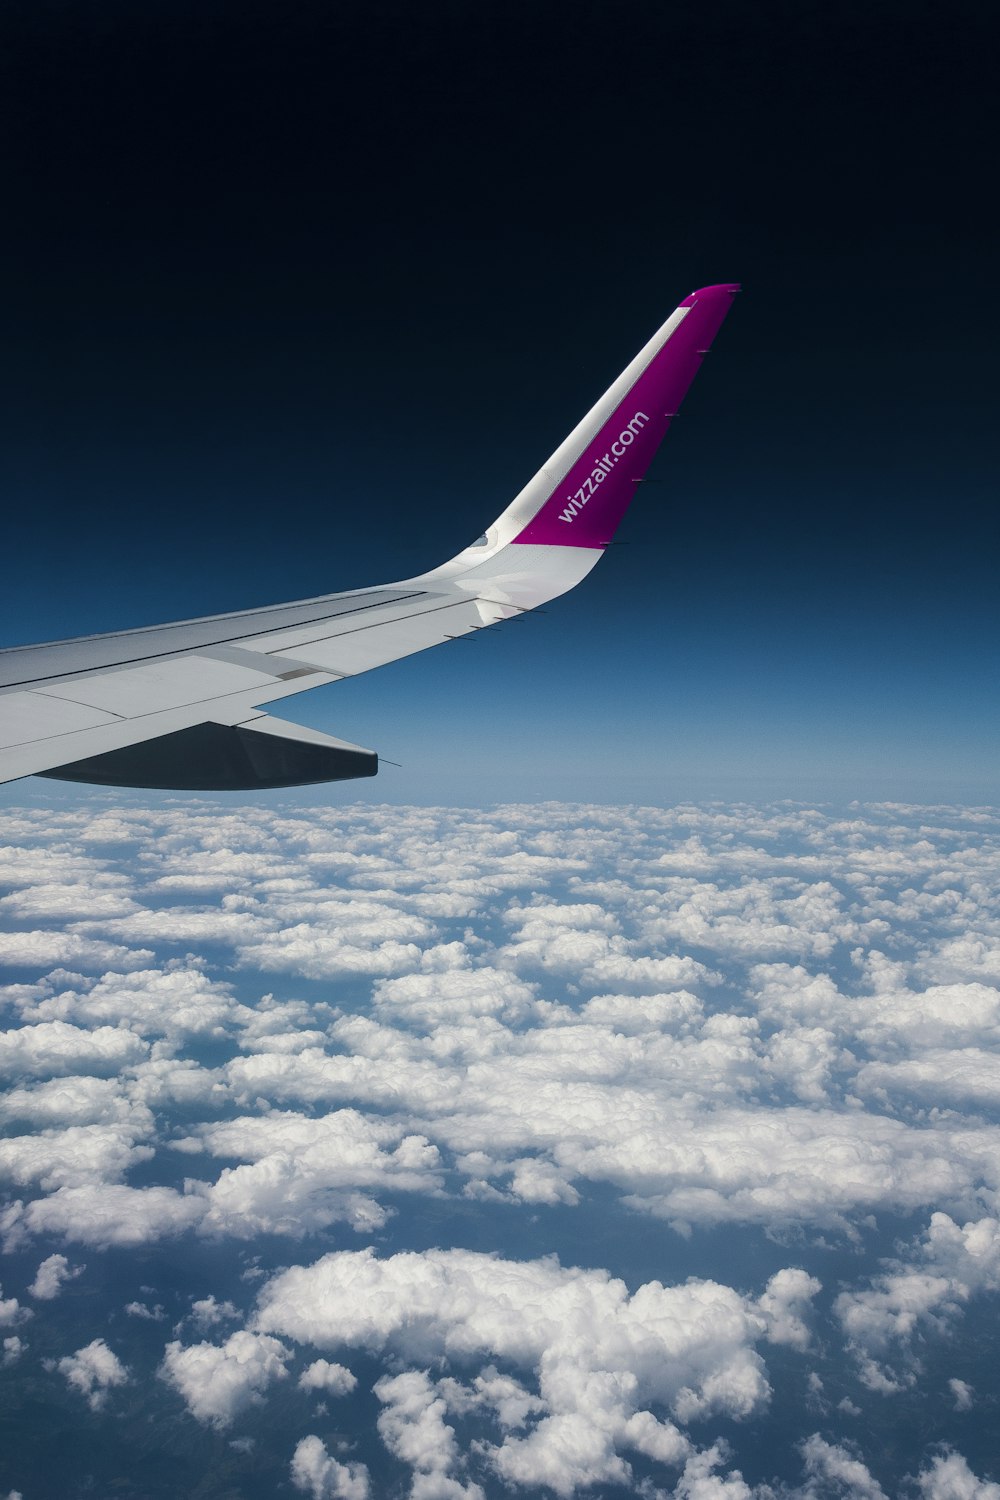 Foto vista de las alas de los aviones por encima de las nubes – Imagen  Grecia gratis en Unsplash